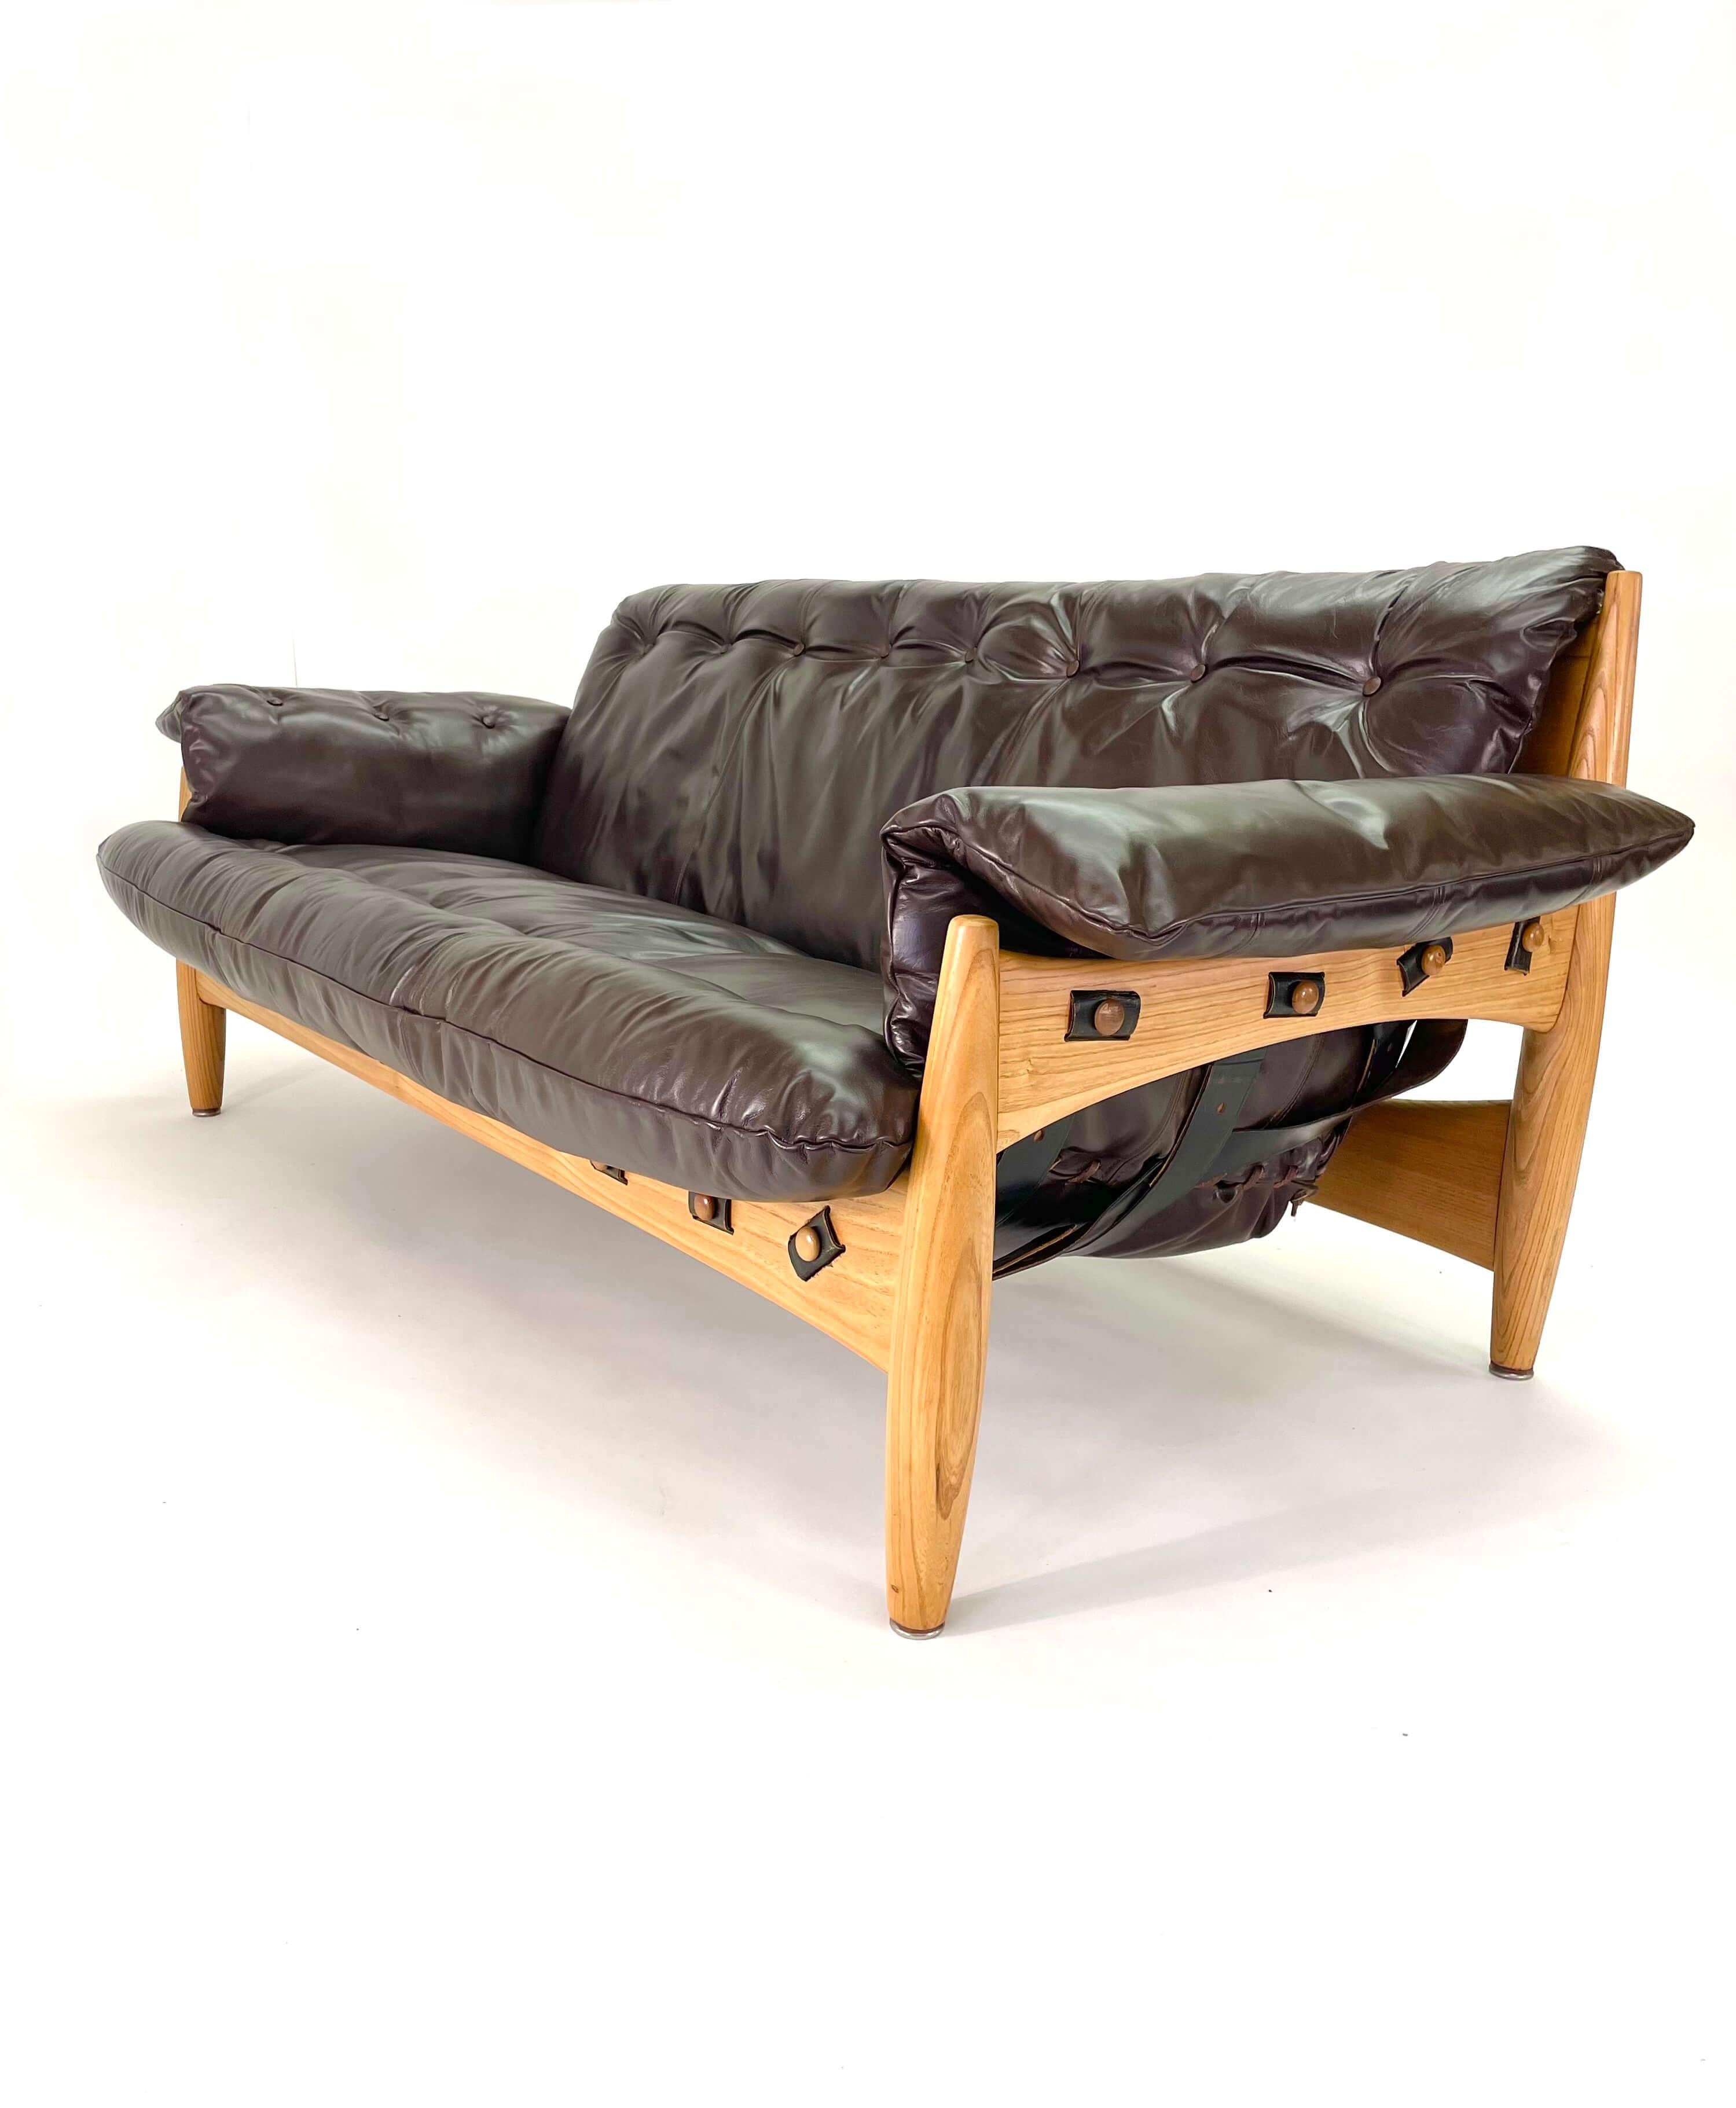 Comme toutes les chaises de Sergio Rodrigues, ce canapé est aussi confortable et vivable que possible. Il s'agit d'un canapé 3 places Design/One entièrement restauré, conçu par le maître brésilien du design moderne, Sergio Rodrigues. Ce canapé